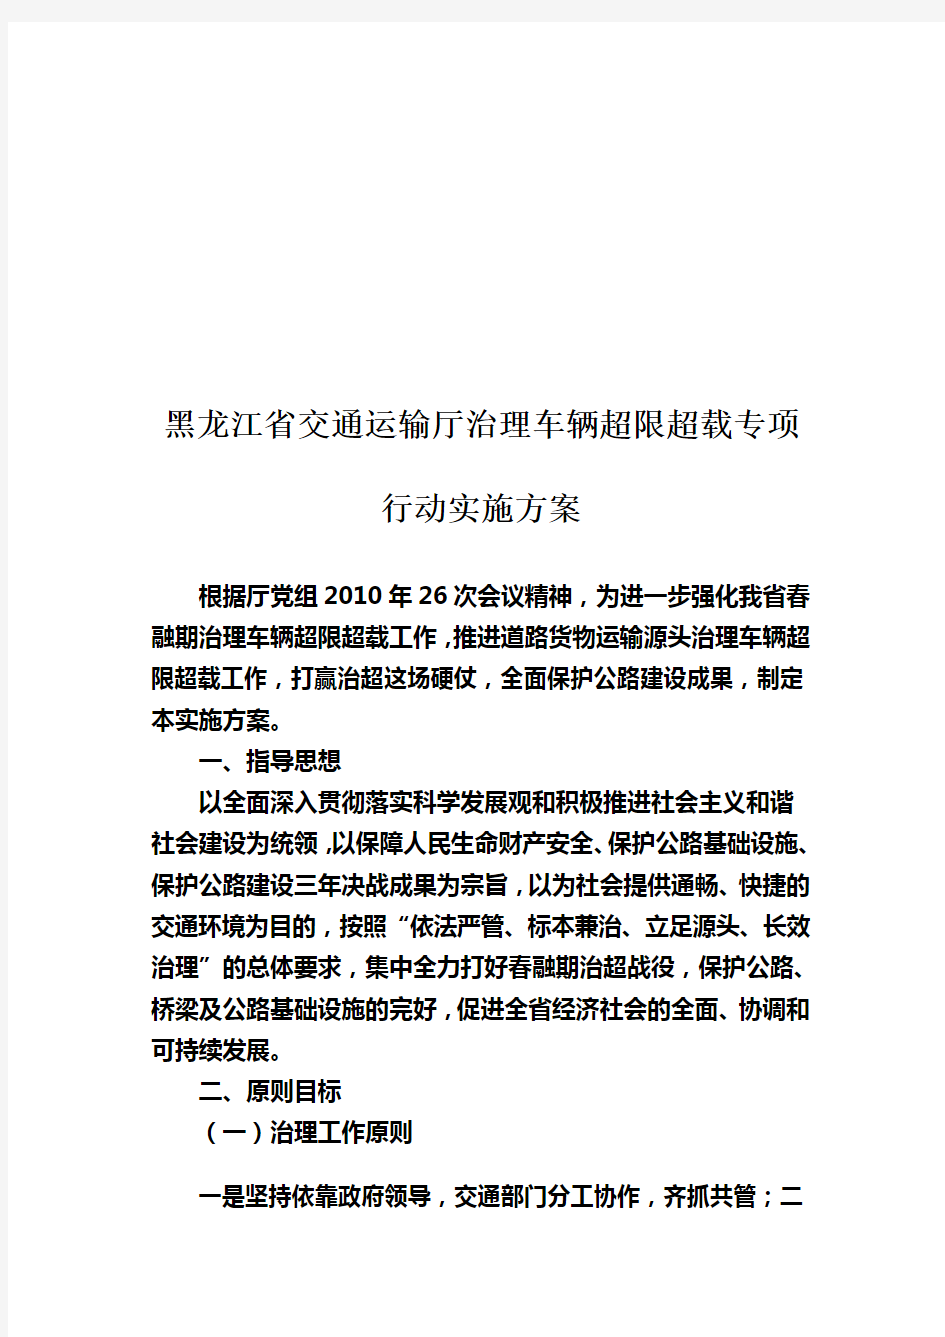 黑龙江省交通运输厅治理车辆超限超载方案(doc 14页)